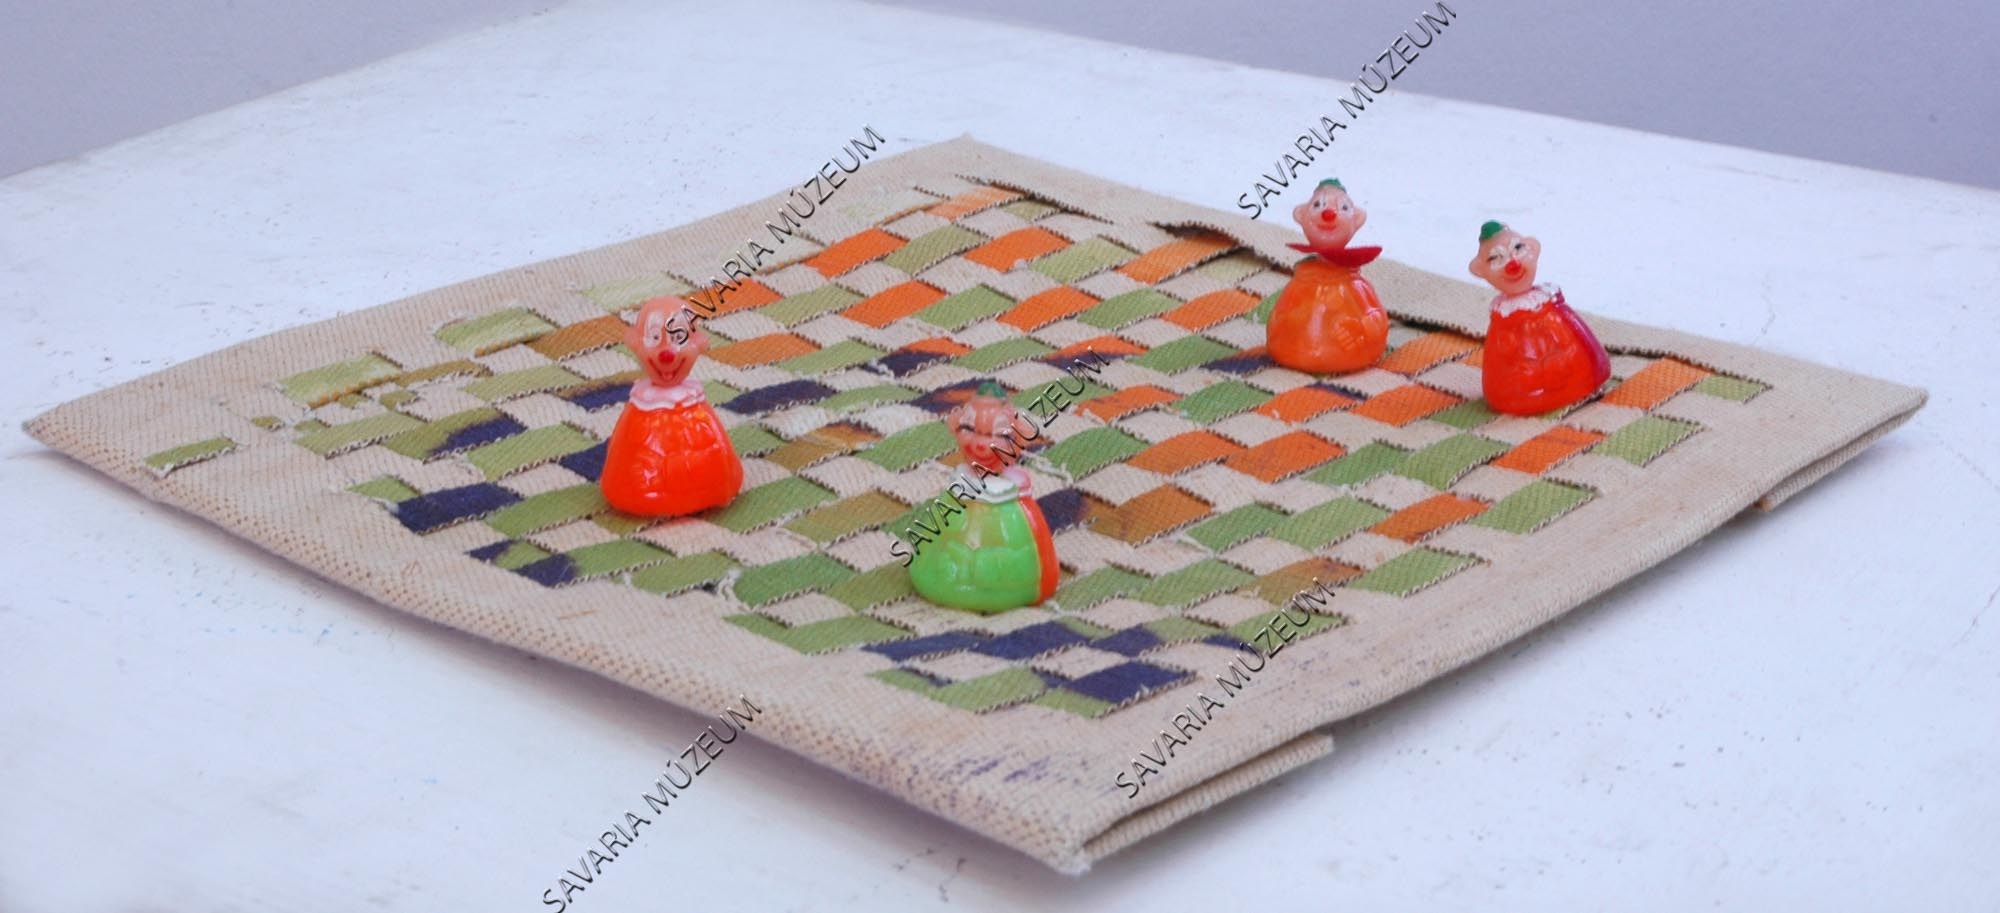 Sakk-matt (Szombathelyi Képtár CC BY-NC-SA)